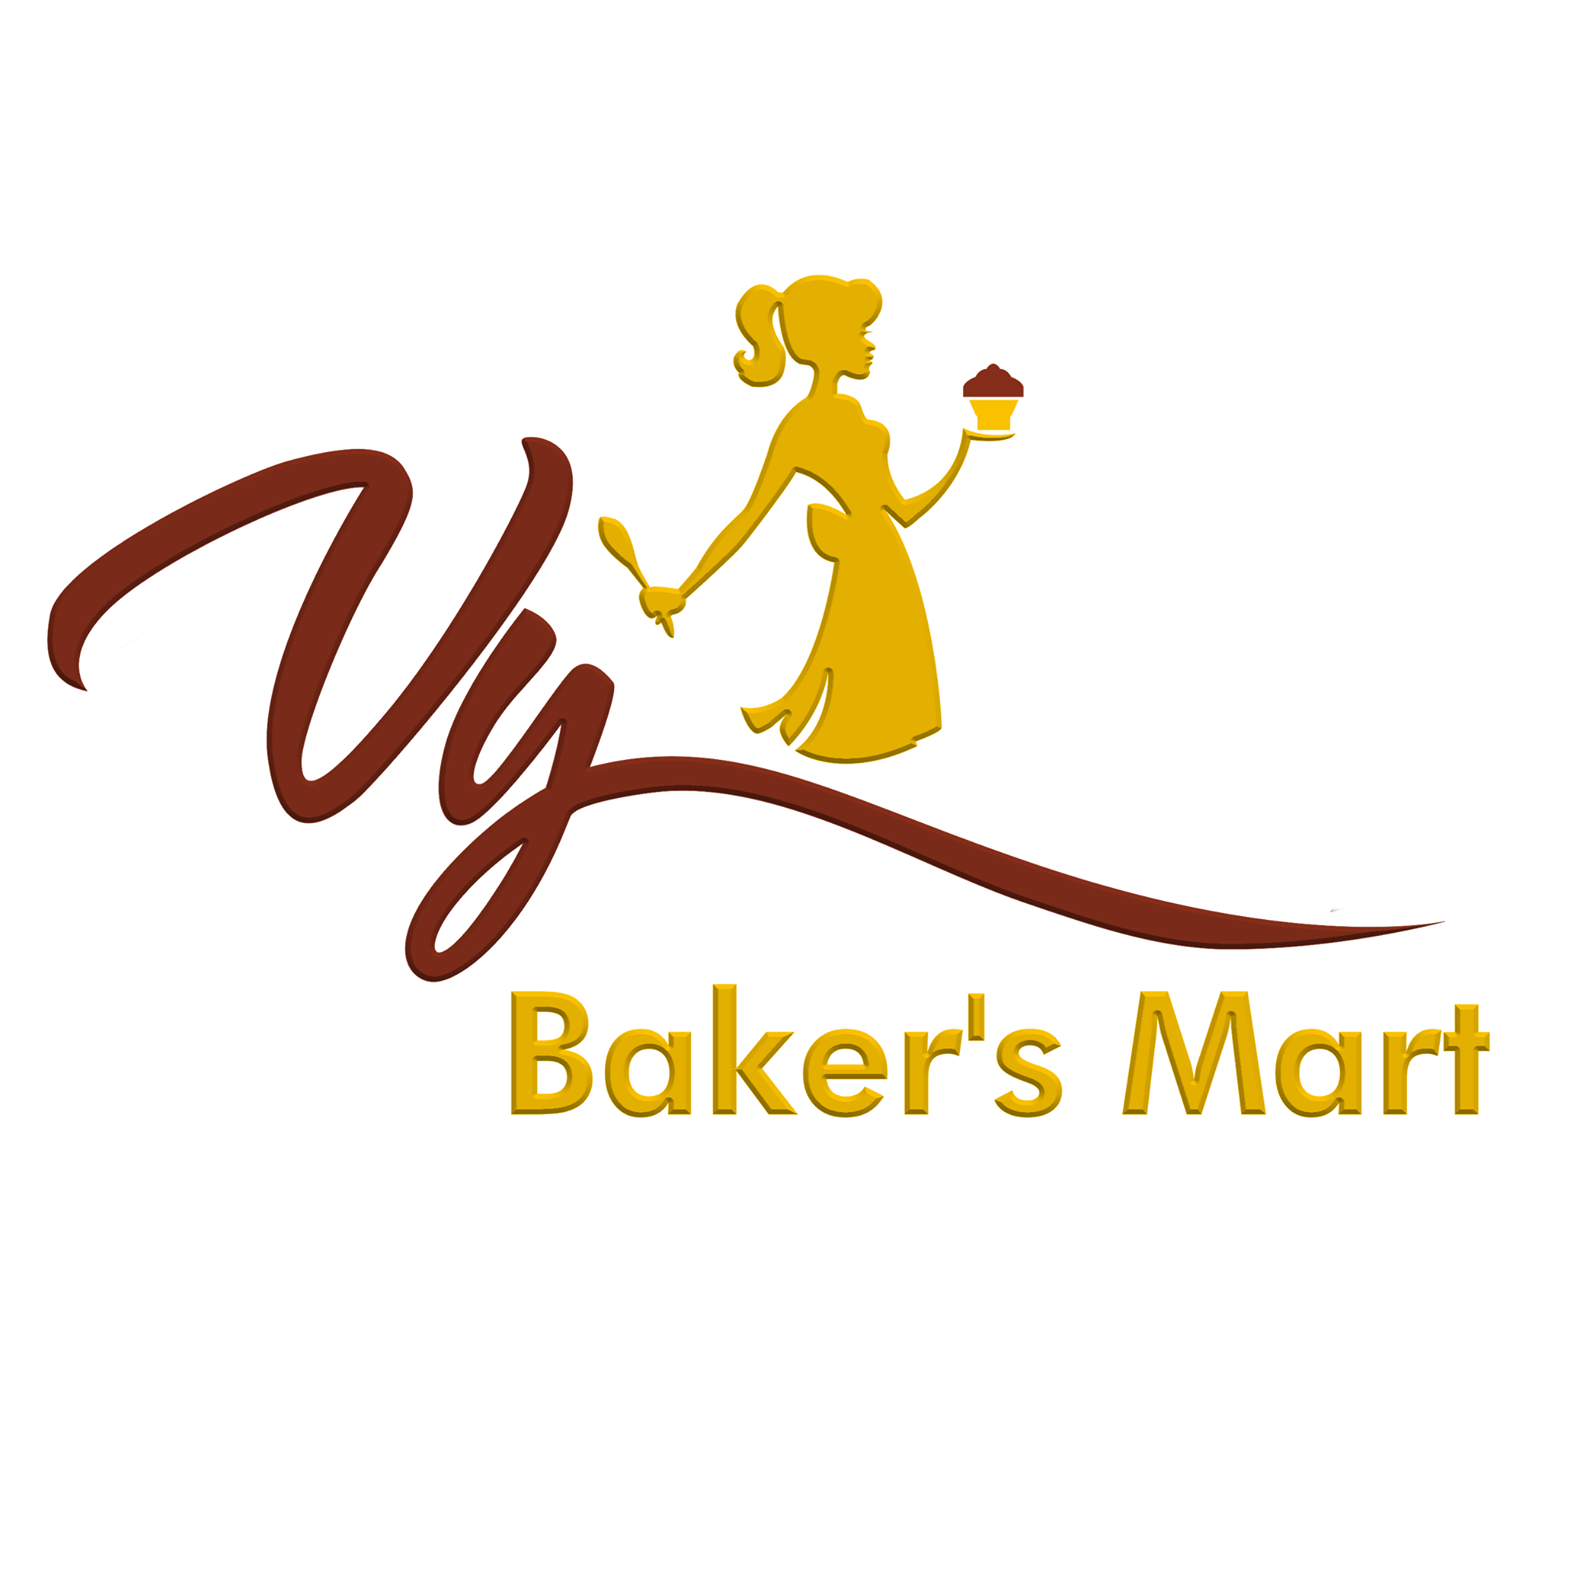 Vy Baker's Mart 